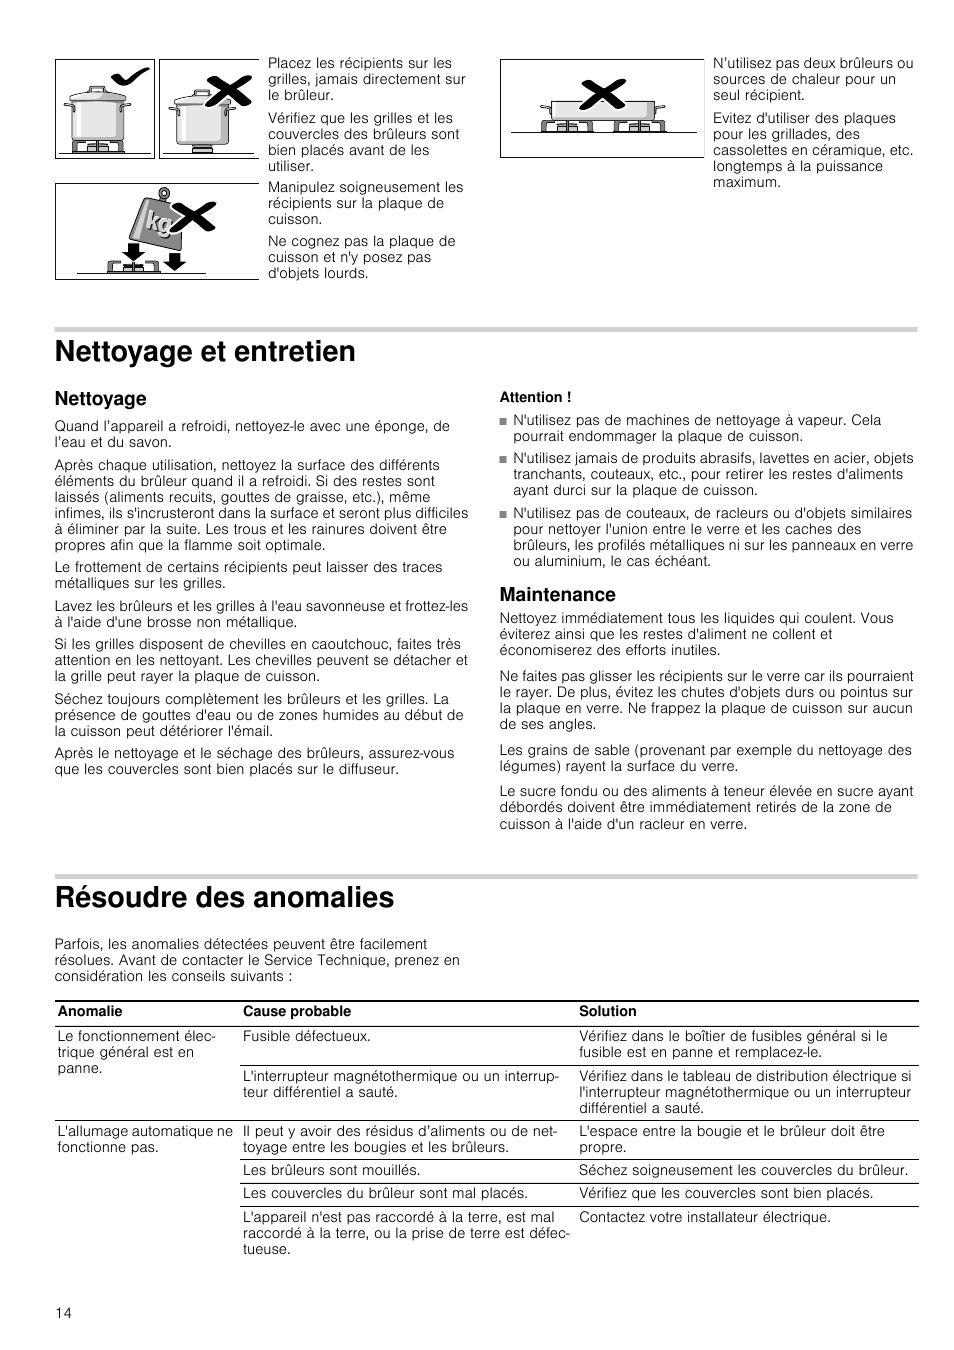 Nettoyage et entretien, Nettoyage, Attention | Maintenance, Résoudre des anomalies, Maintenance résoudre des anomalies | Neff T61S31S1 Manuel d'utilisation | Page 14 / 16